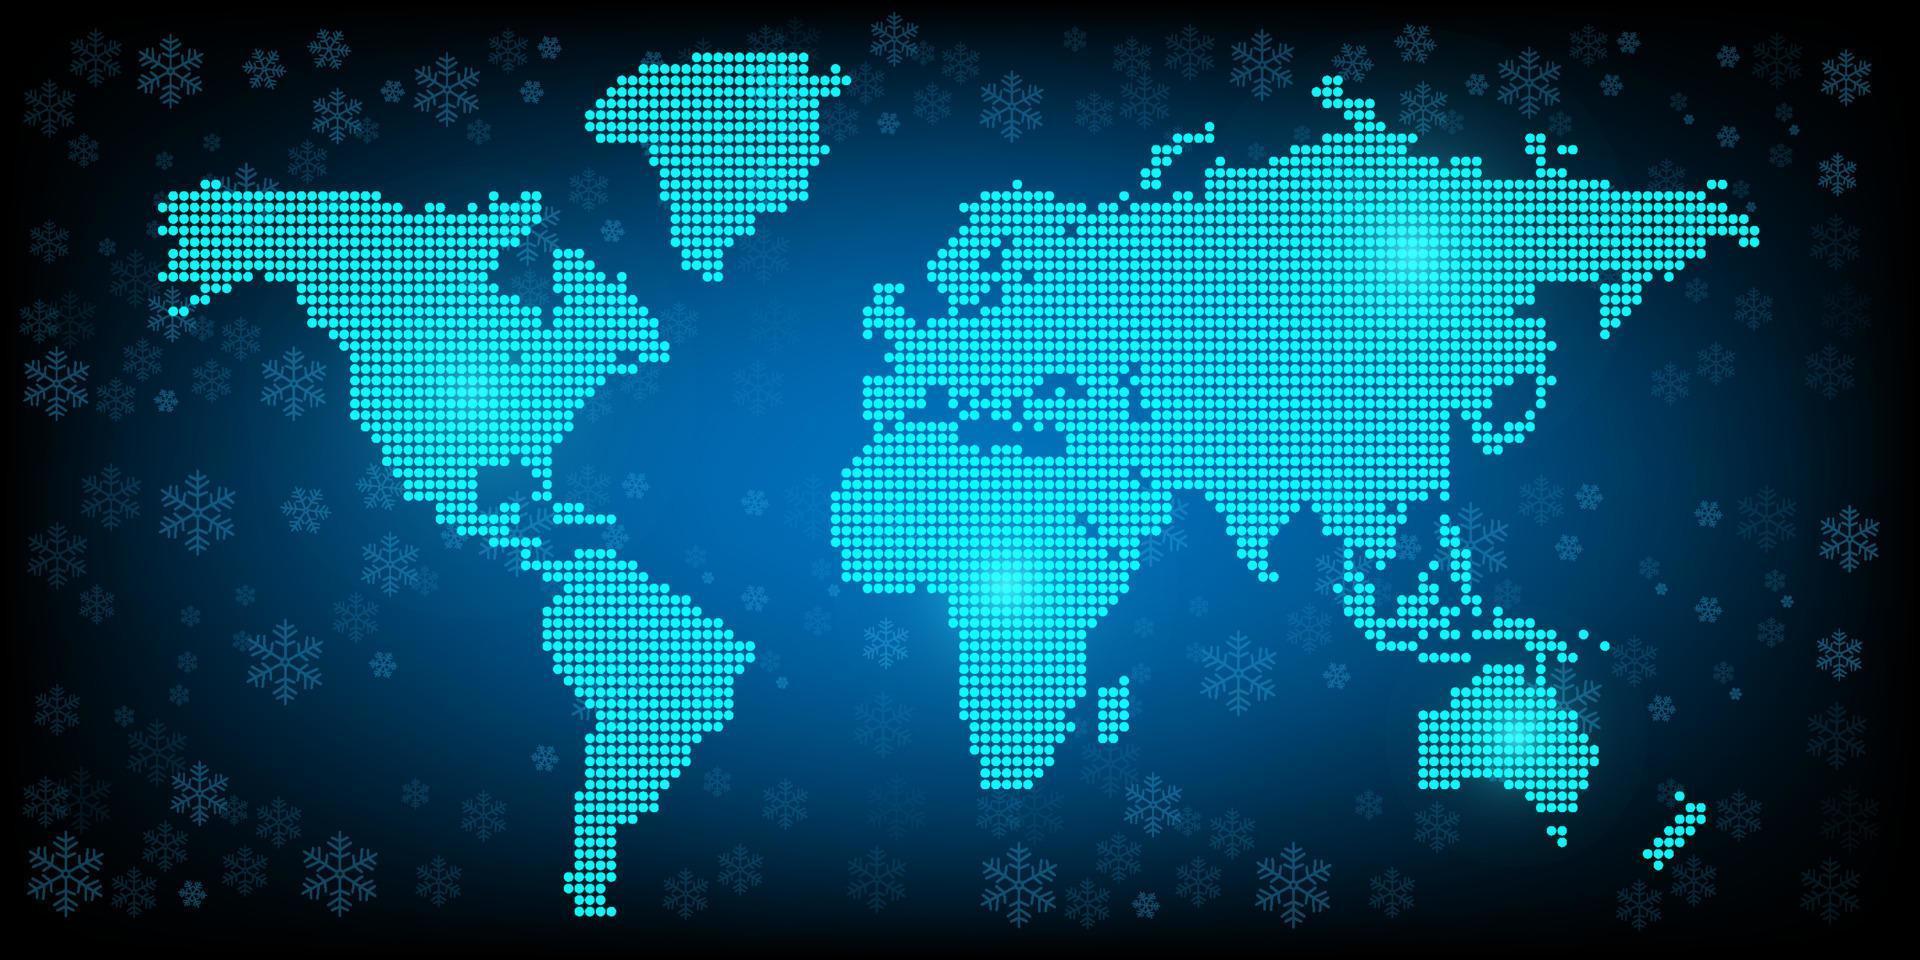 Kerstmis winter sneeuw met wereld kaart futuristische patroon achtergrond viering seizoen vakantie omhulsel papier , groet kaart voor versieren premie Product vector